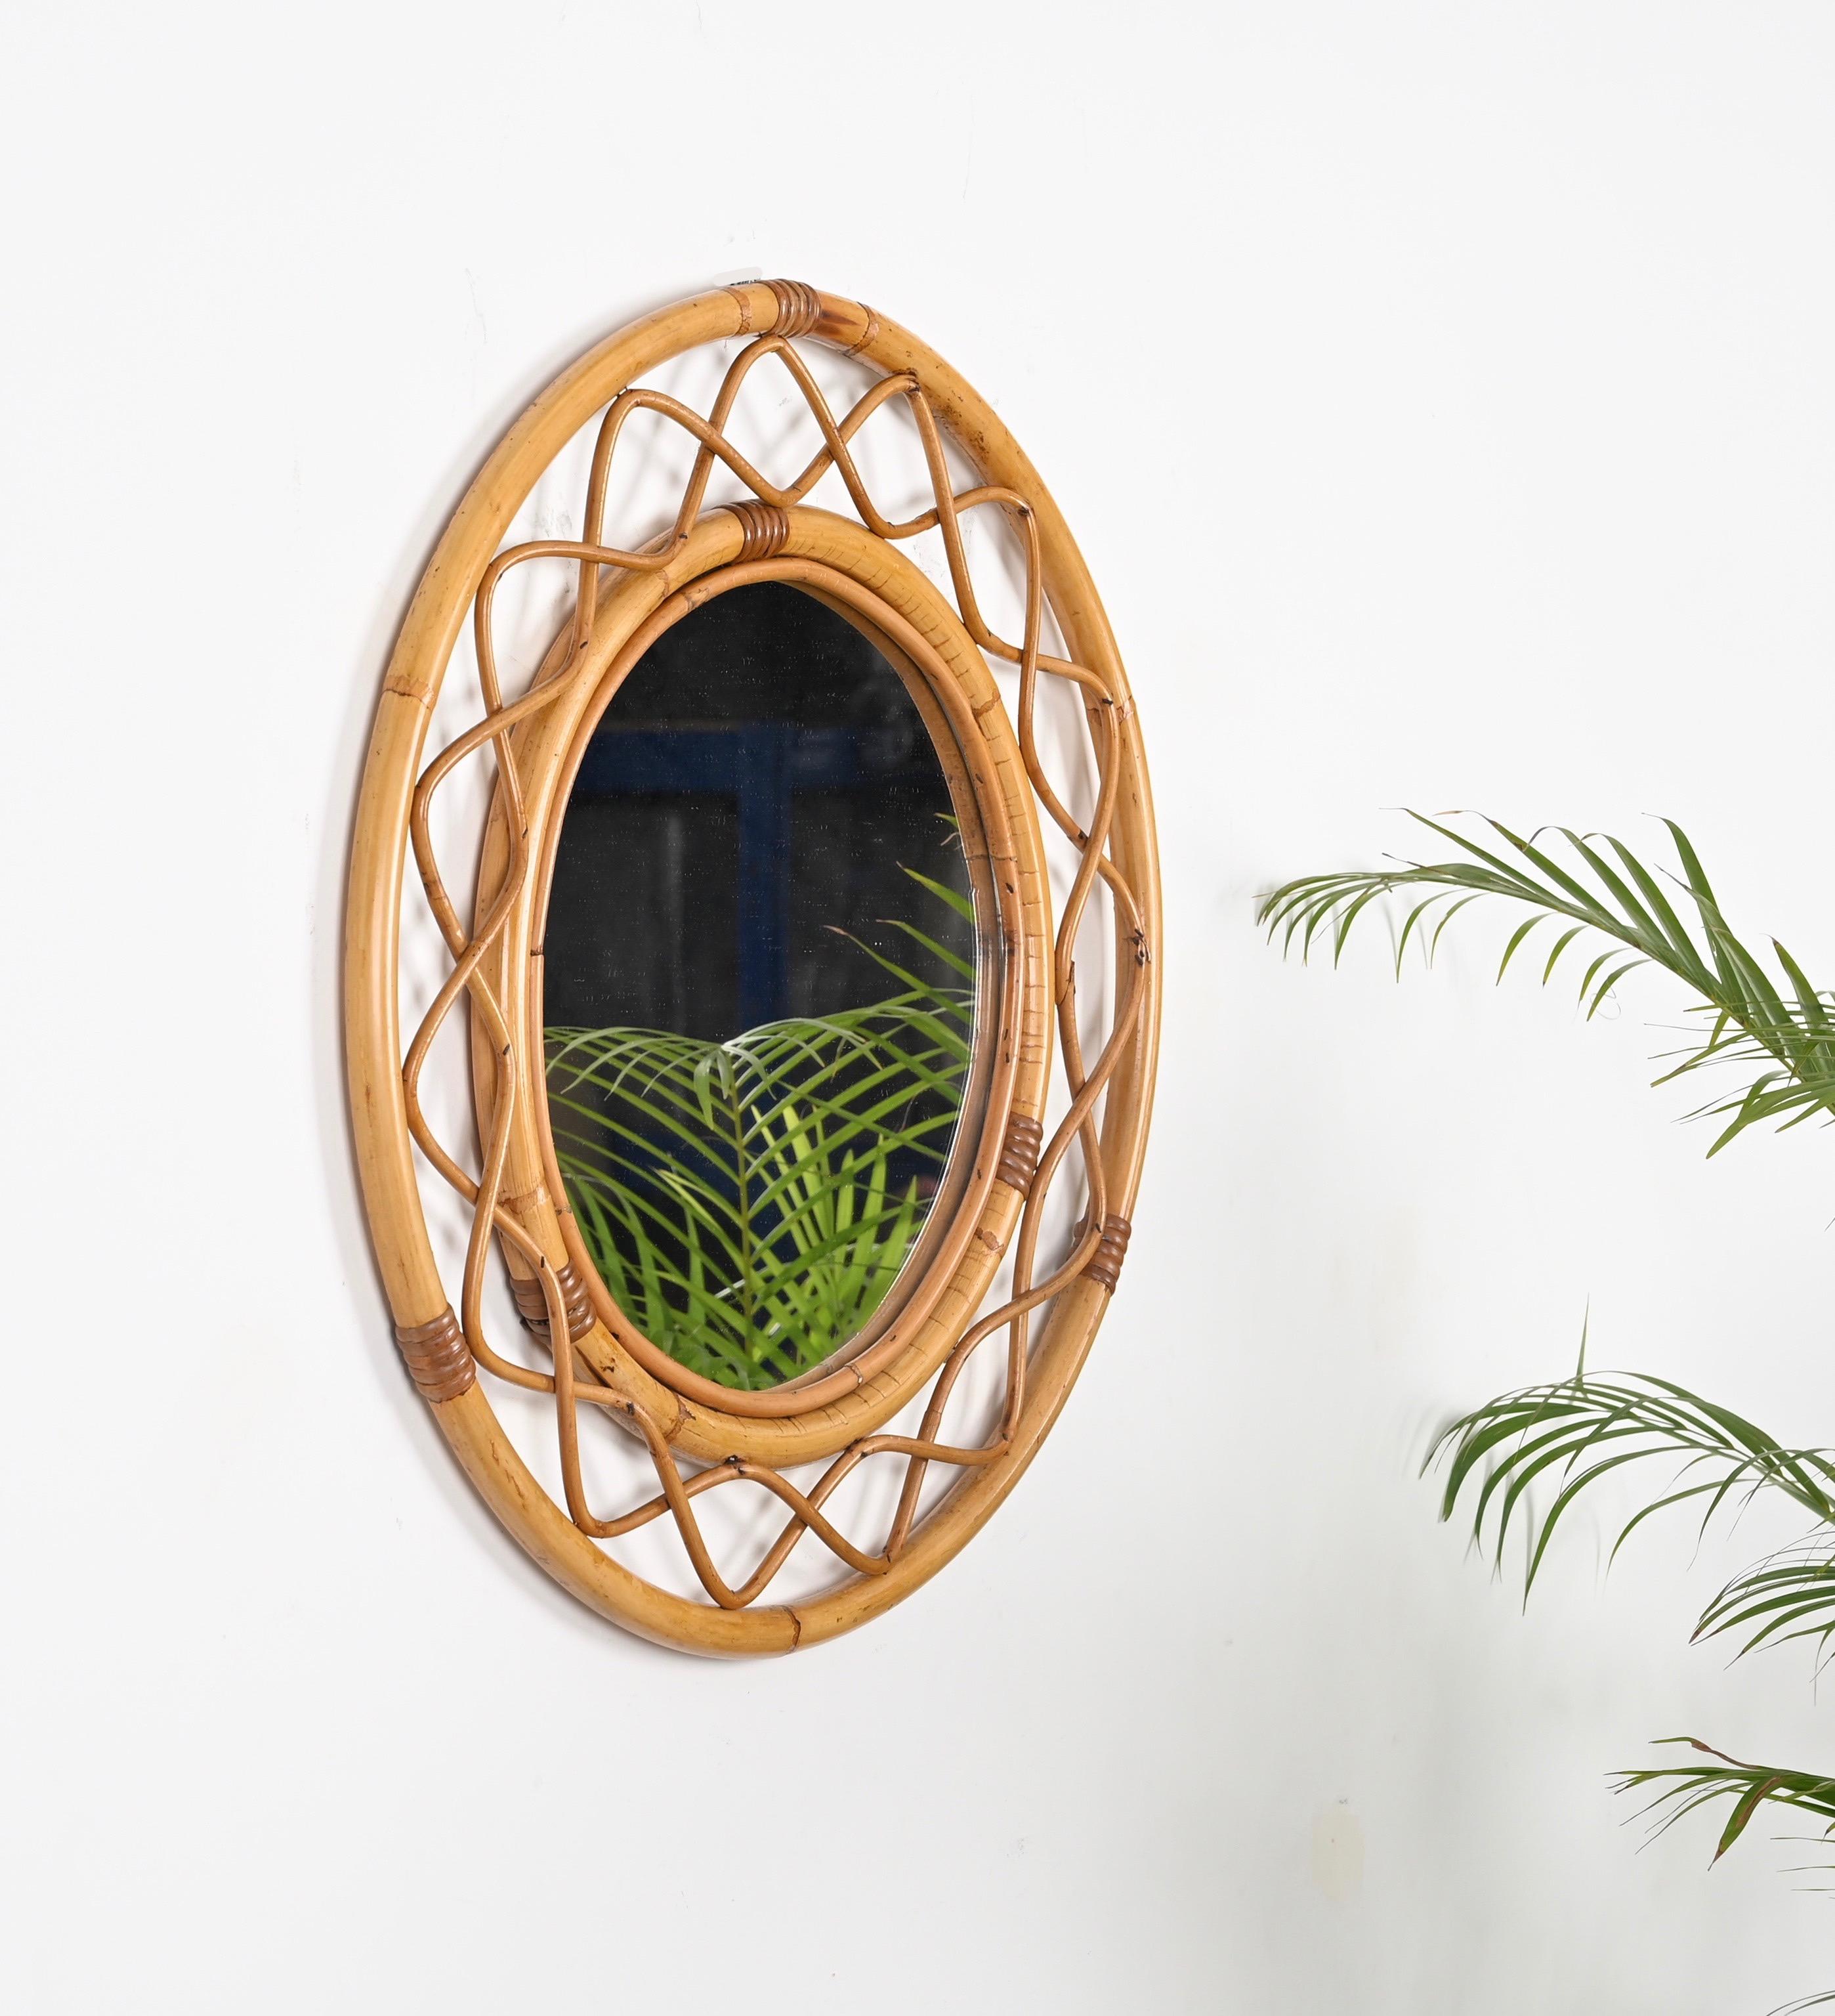 Atemberaubender runder Spiegel im französischen Riviera-Stil aus der Mitte des Jahrhunderts, komplett aus Bambus, Rattan und Weide. Dieser charmante organische Spiegel wurde in den 1960er Jahren in Italien handgefertigt. 

Dieser atemberaubende